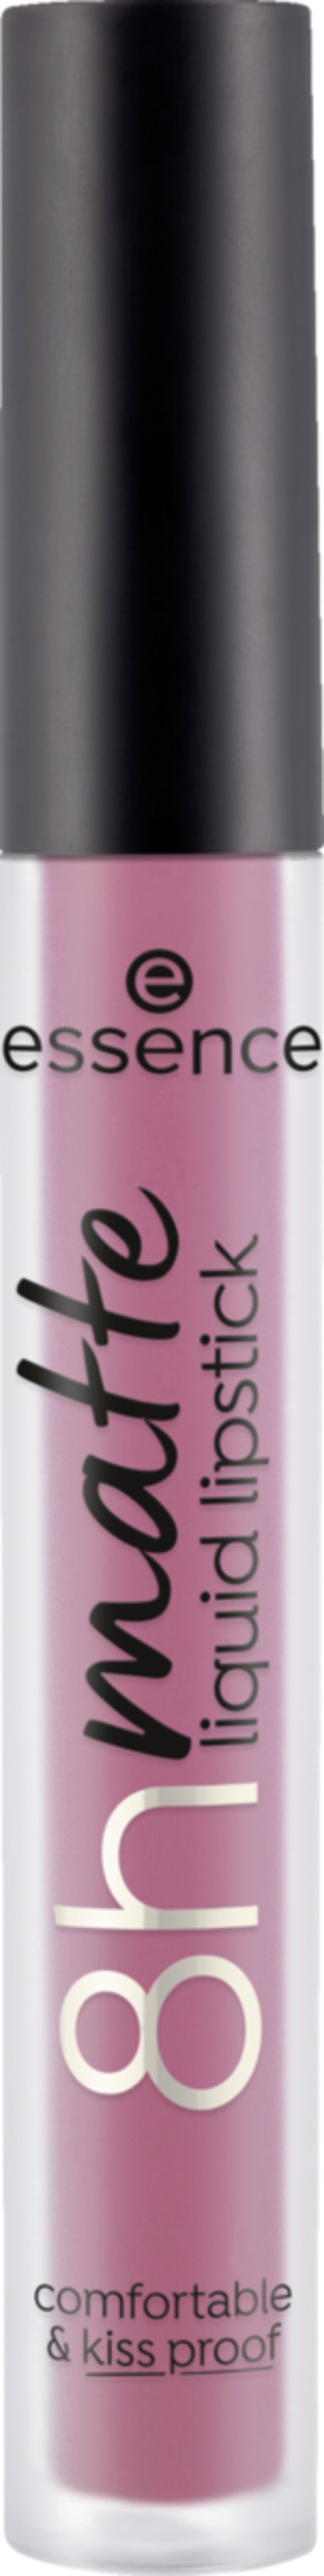 Bild 1 von essence 8h matte liquid lipstick 05